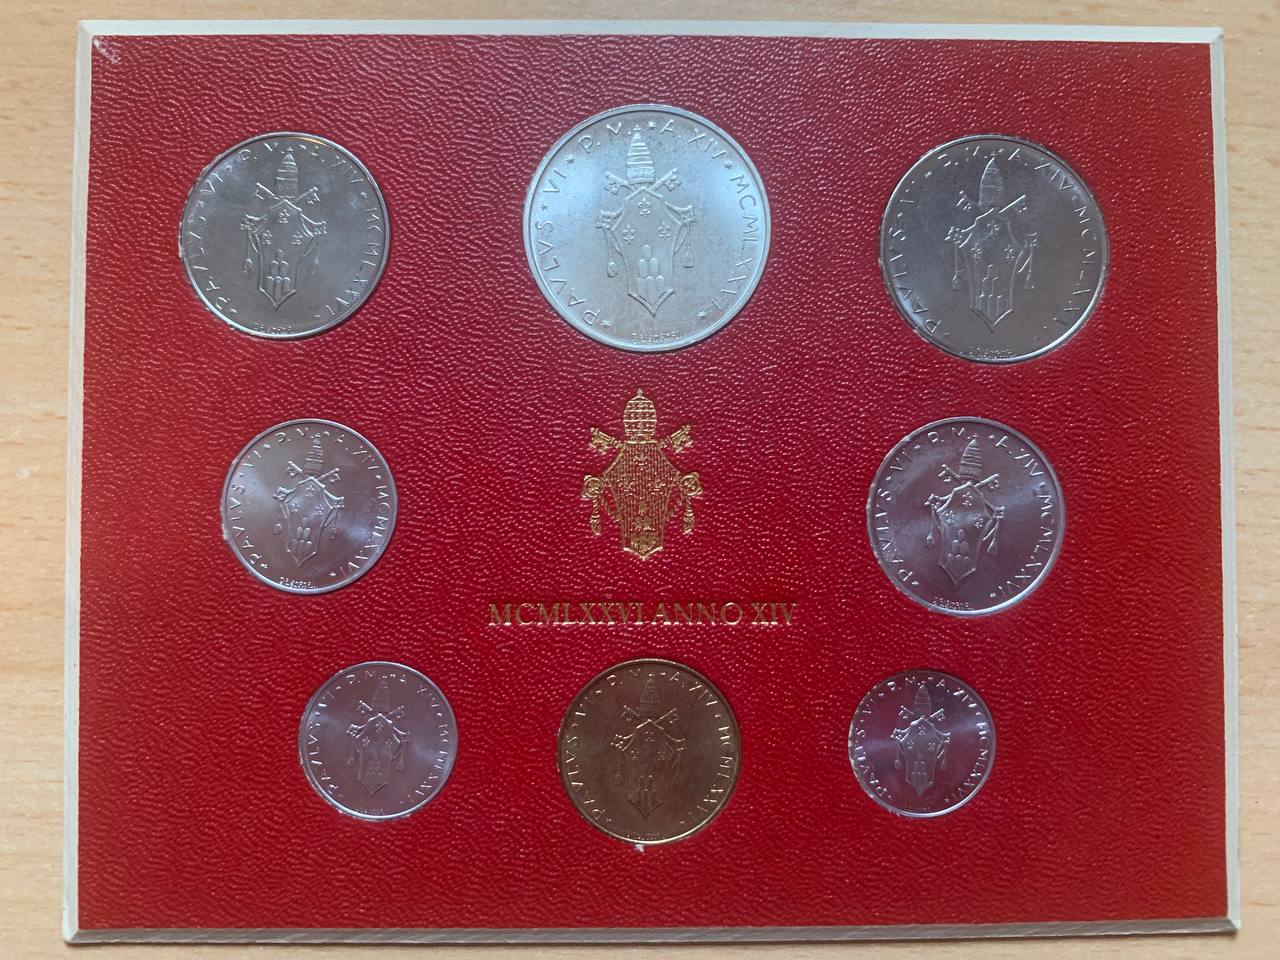  Jahresset von Vatikan 1976 BU (8 Münzen)   